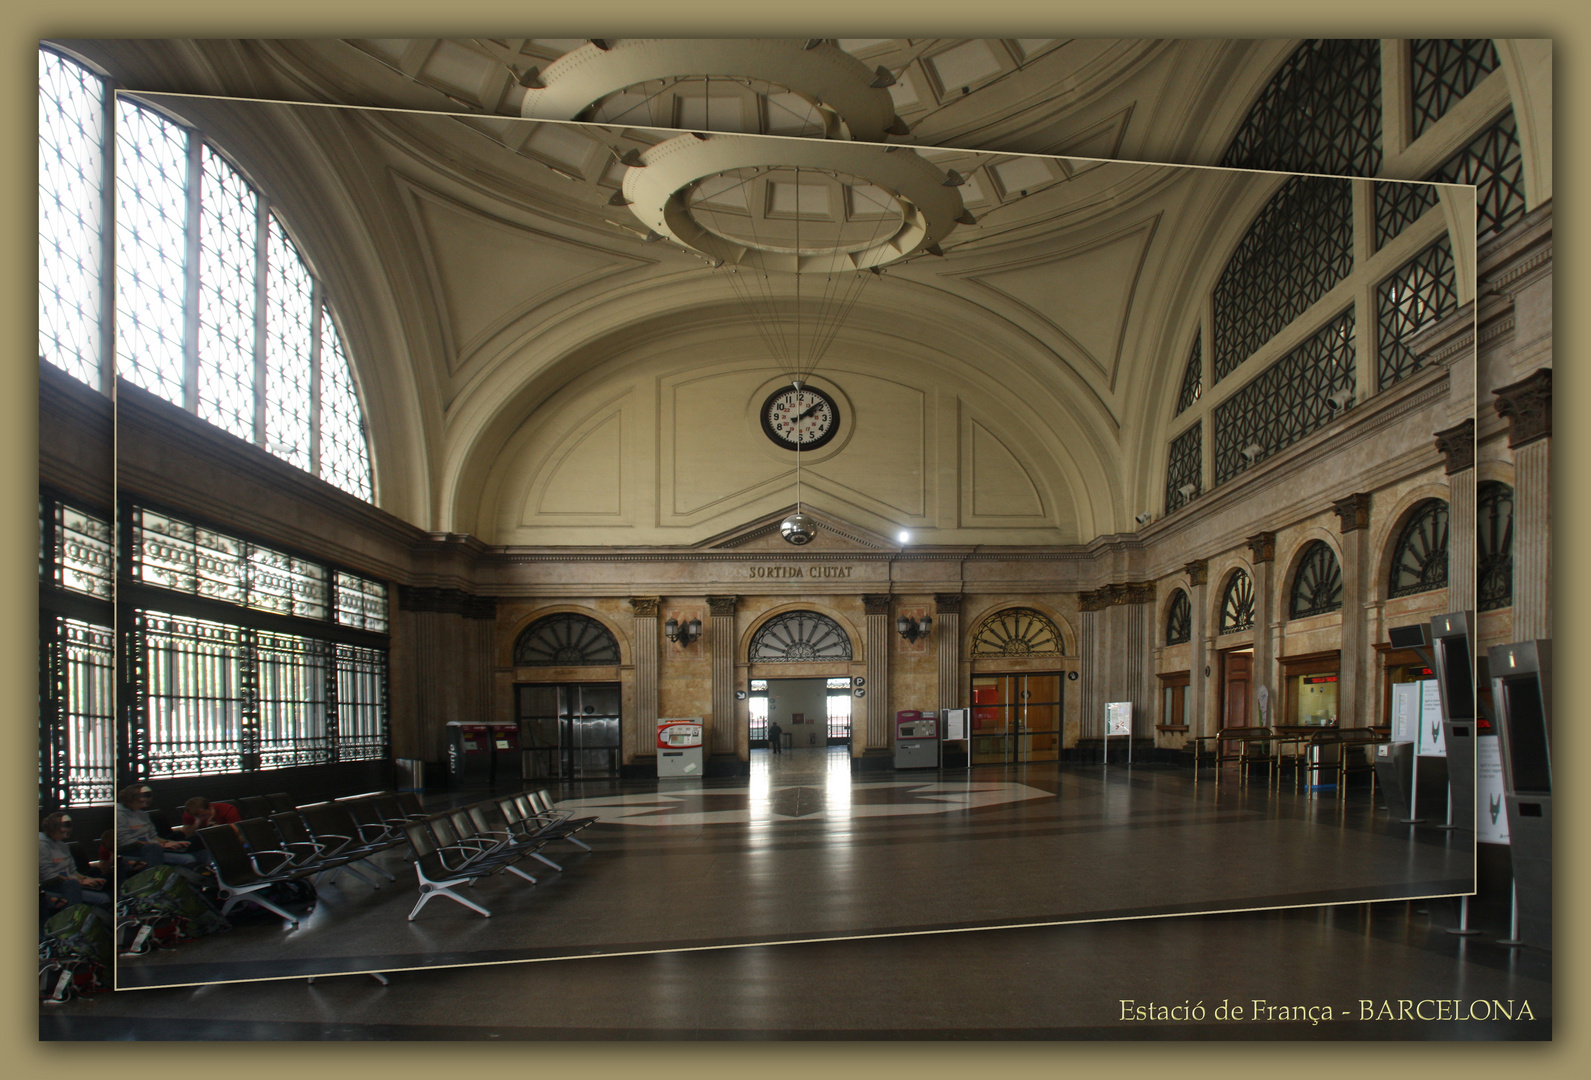 Estacio de Franca - Bahnhof mit Geschichte